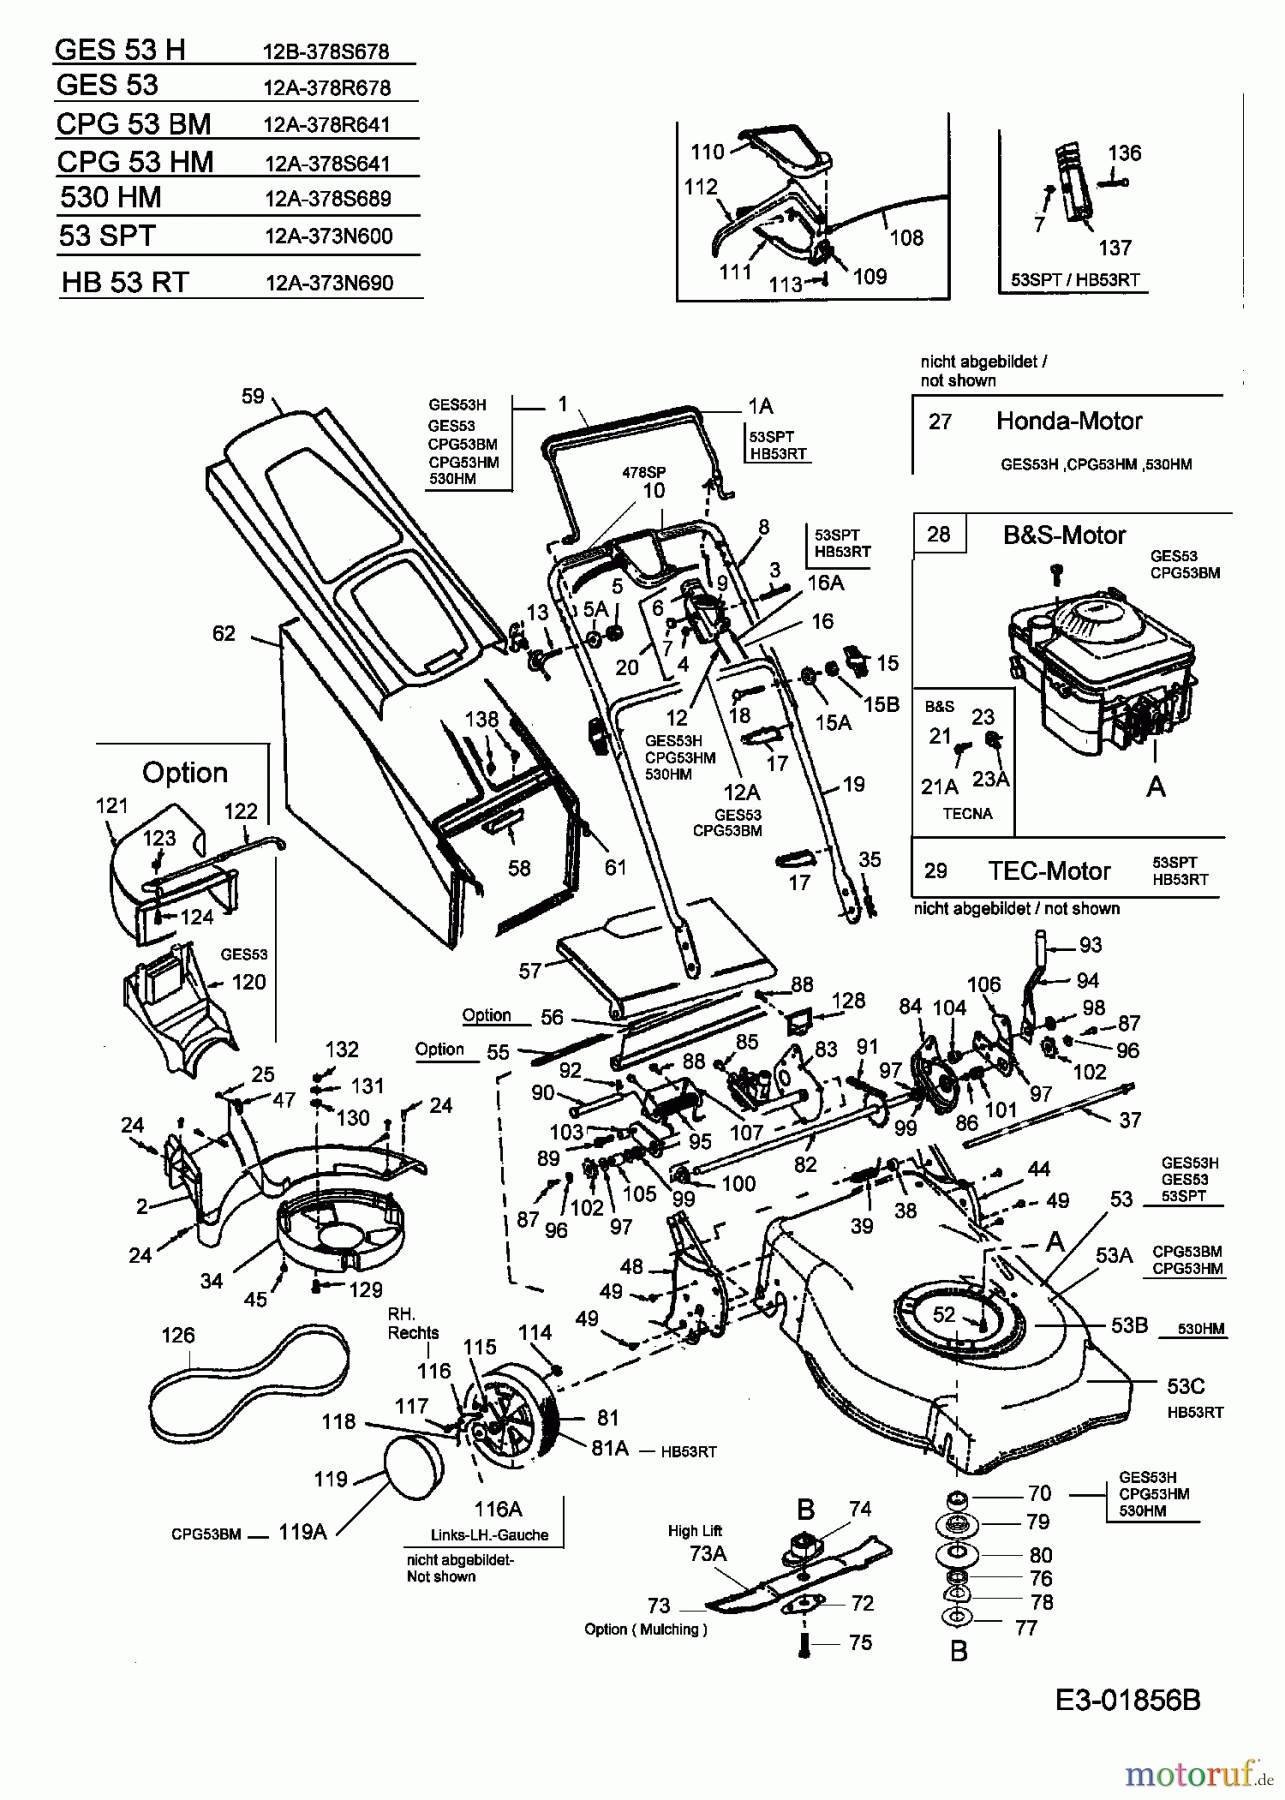  Central Park Motormäher mit Antrieb CPG 53 HM 12A-378S641  (2004) Grundgerät